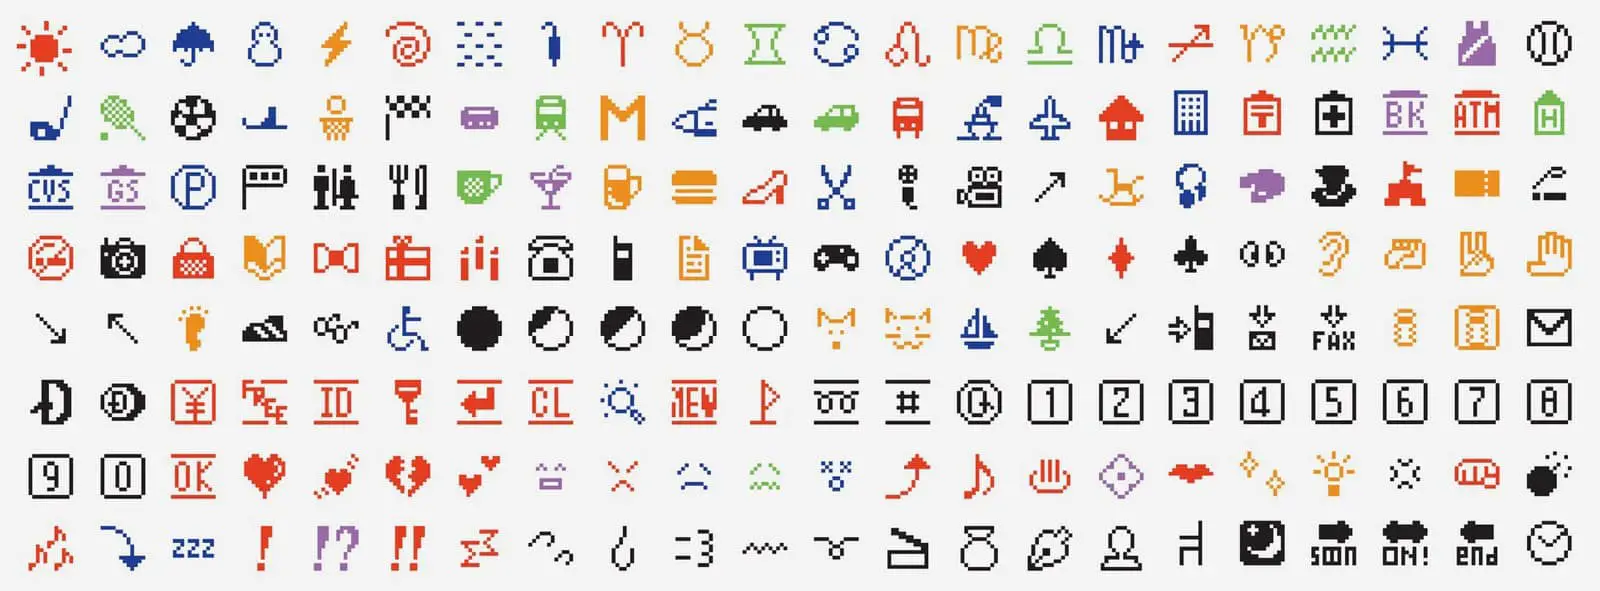 Deutsch liste whatsapp bedeutung emoji Whatsapp Emojis